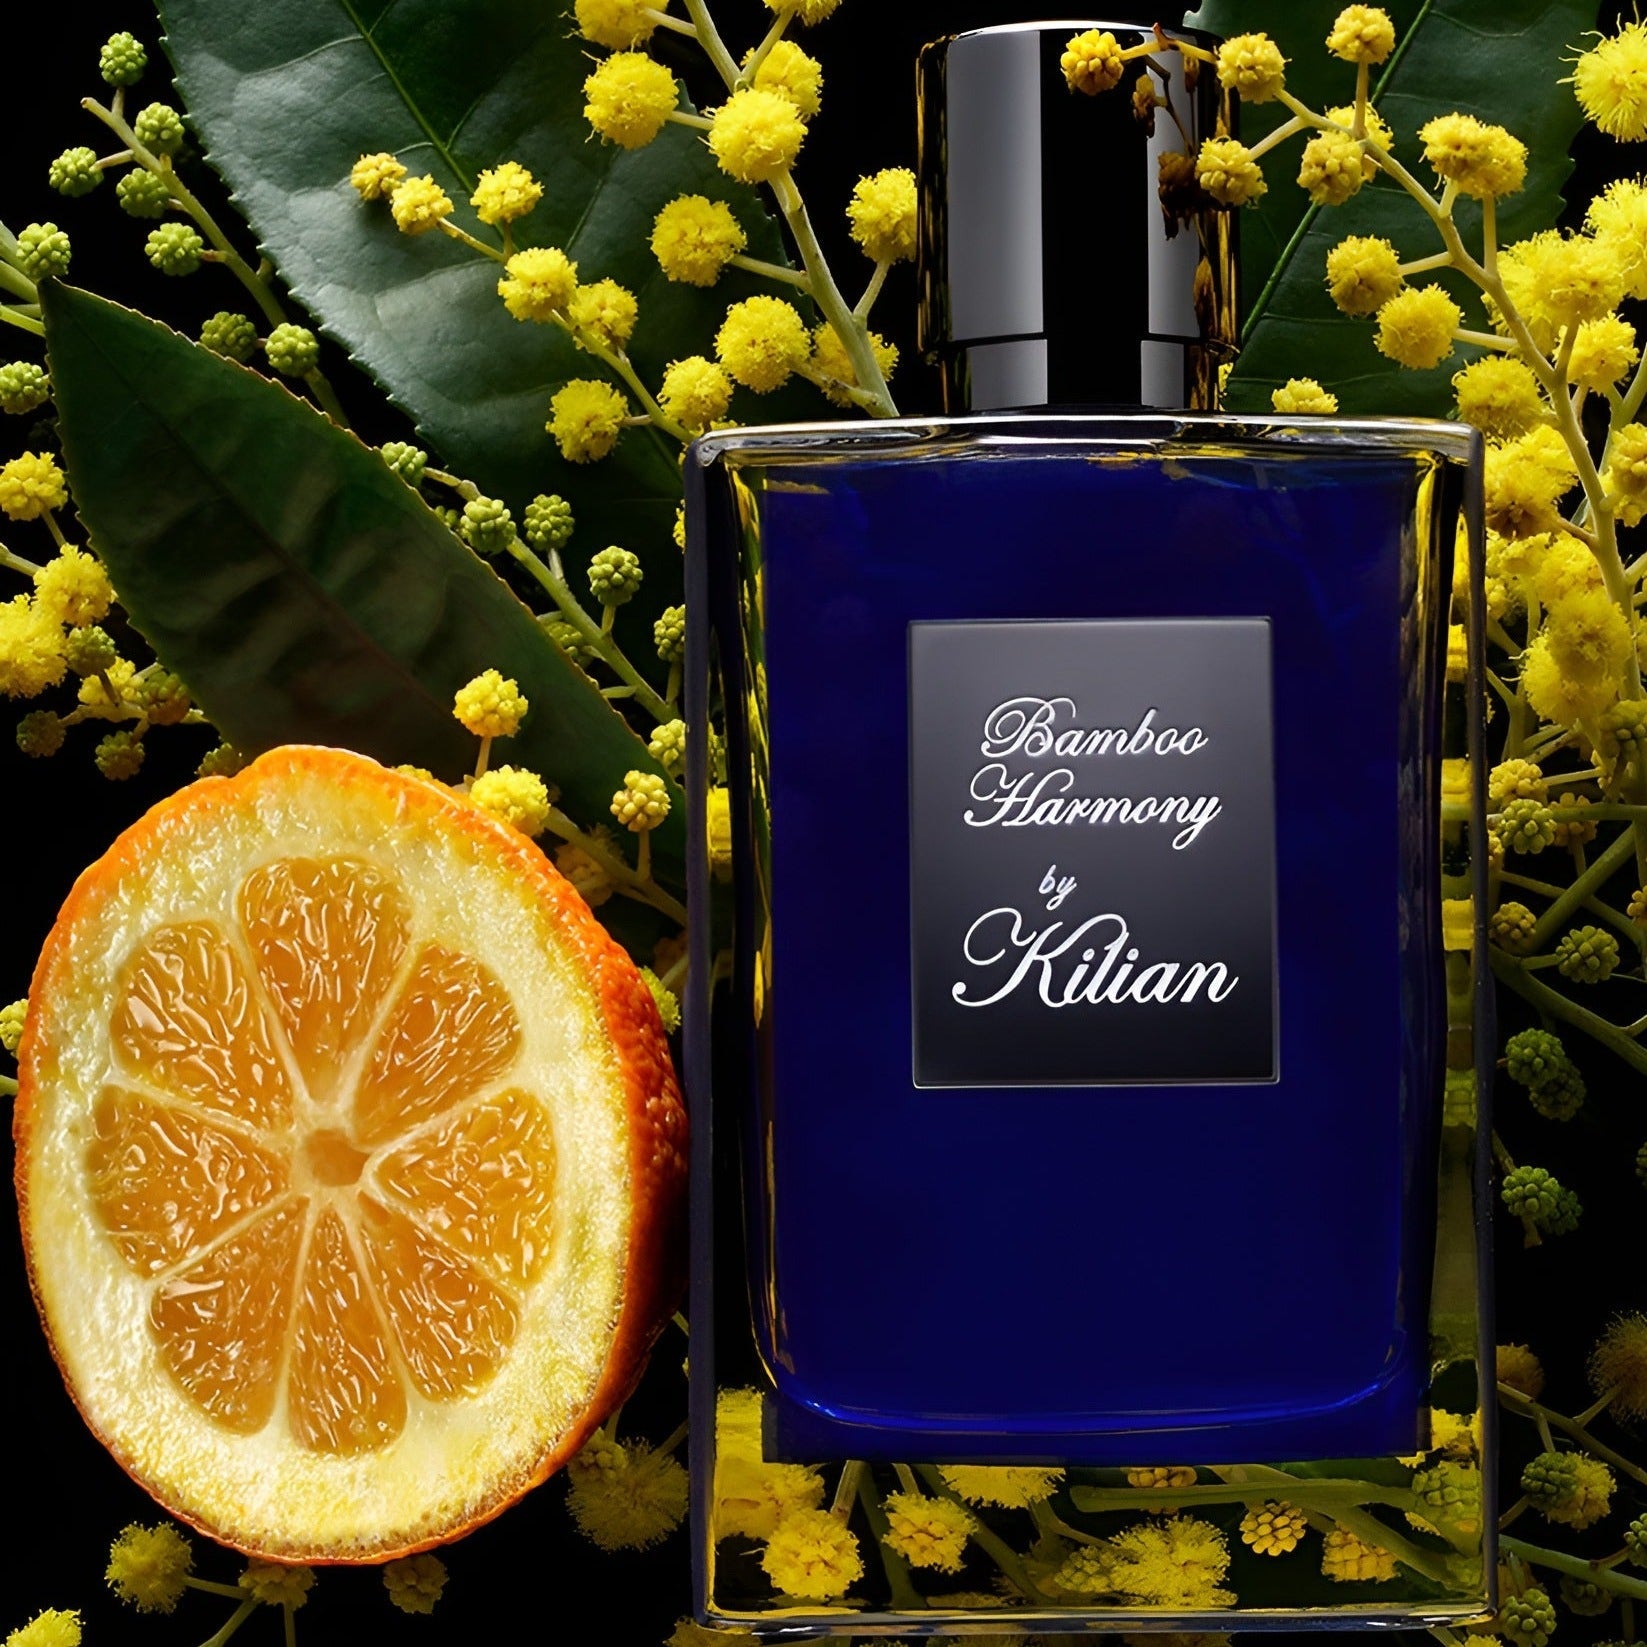 Kilian Bamboo Harmony EDP | My Perfume Shop Australia